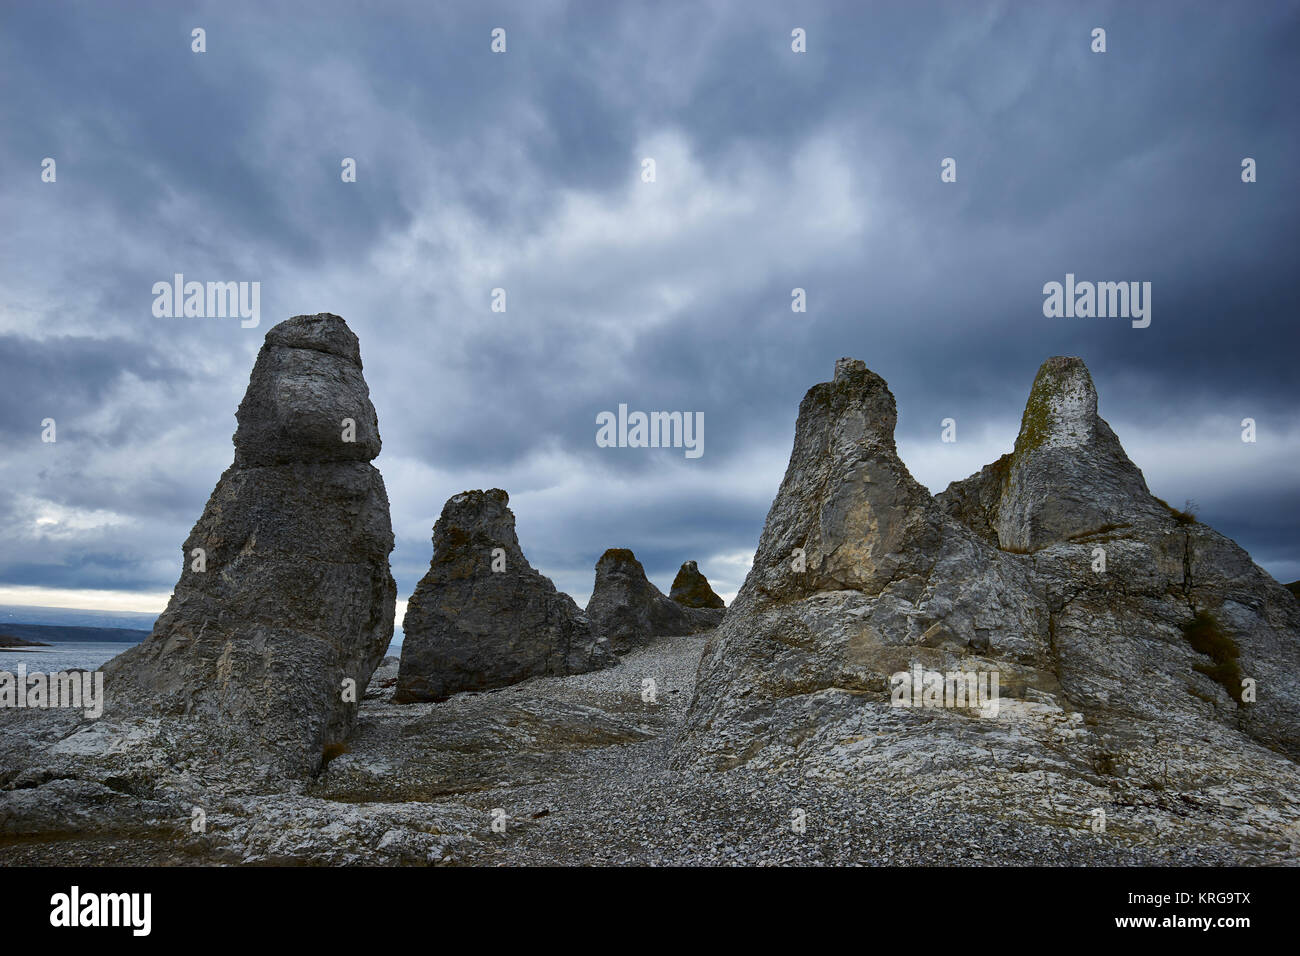 Dolomite formazioni di pietra, Trollholmsund, vicino a Lakselv, Finnmark, Norvegia. La leggenda narra che queste formazioni erano una volta i troll che dove girato t Foto Stock